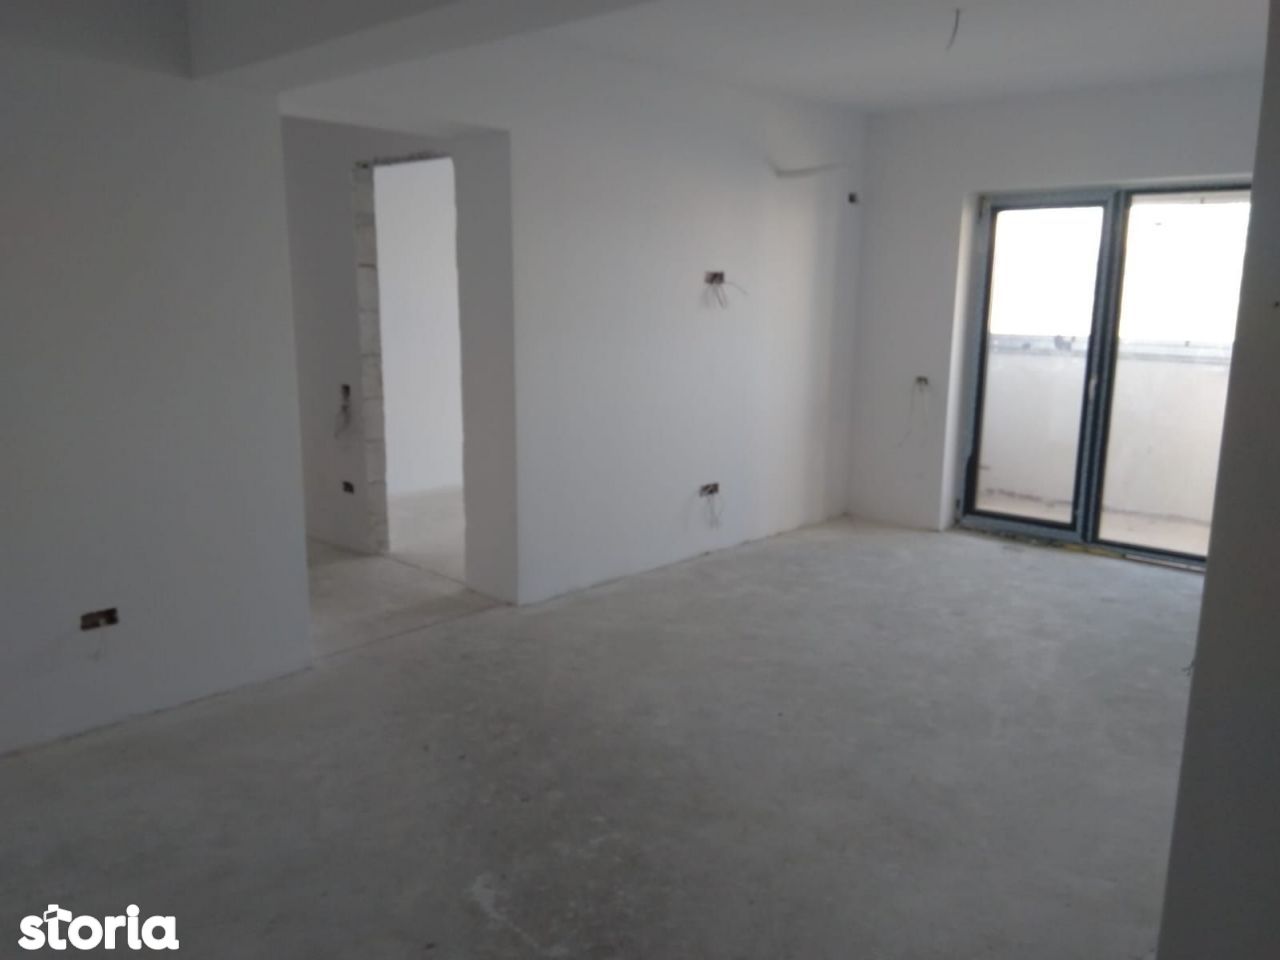 Elvila bloc nou-apartament 3 camere decomandat la alb